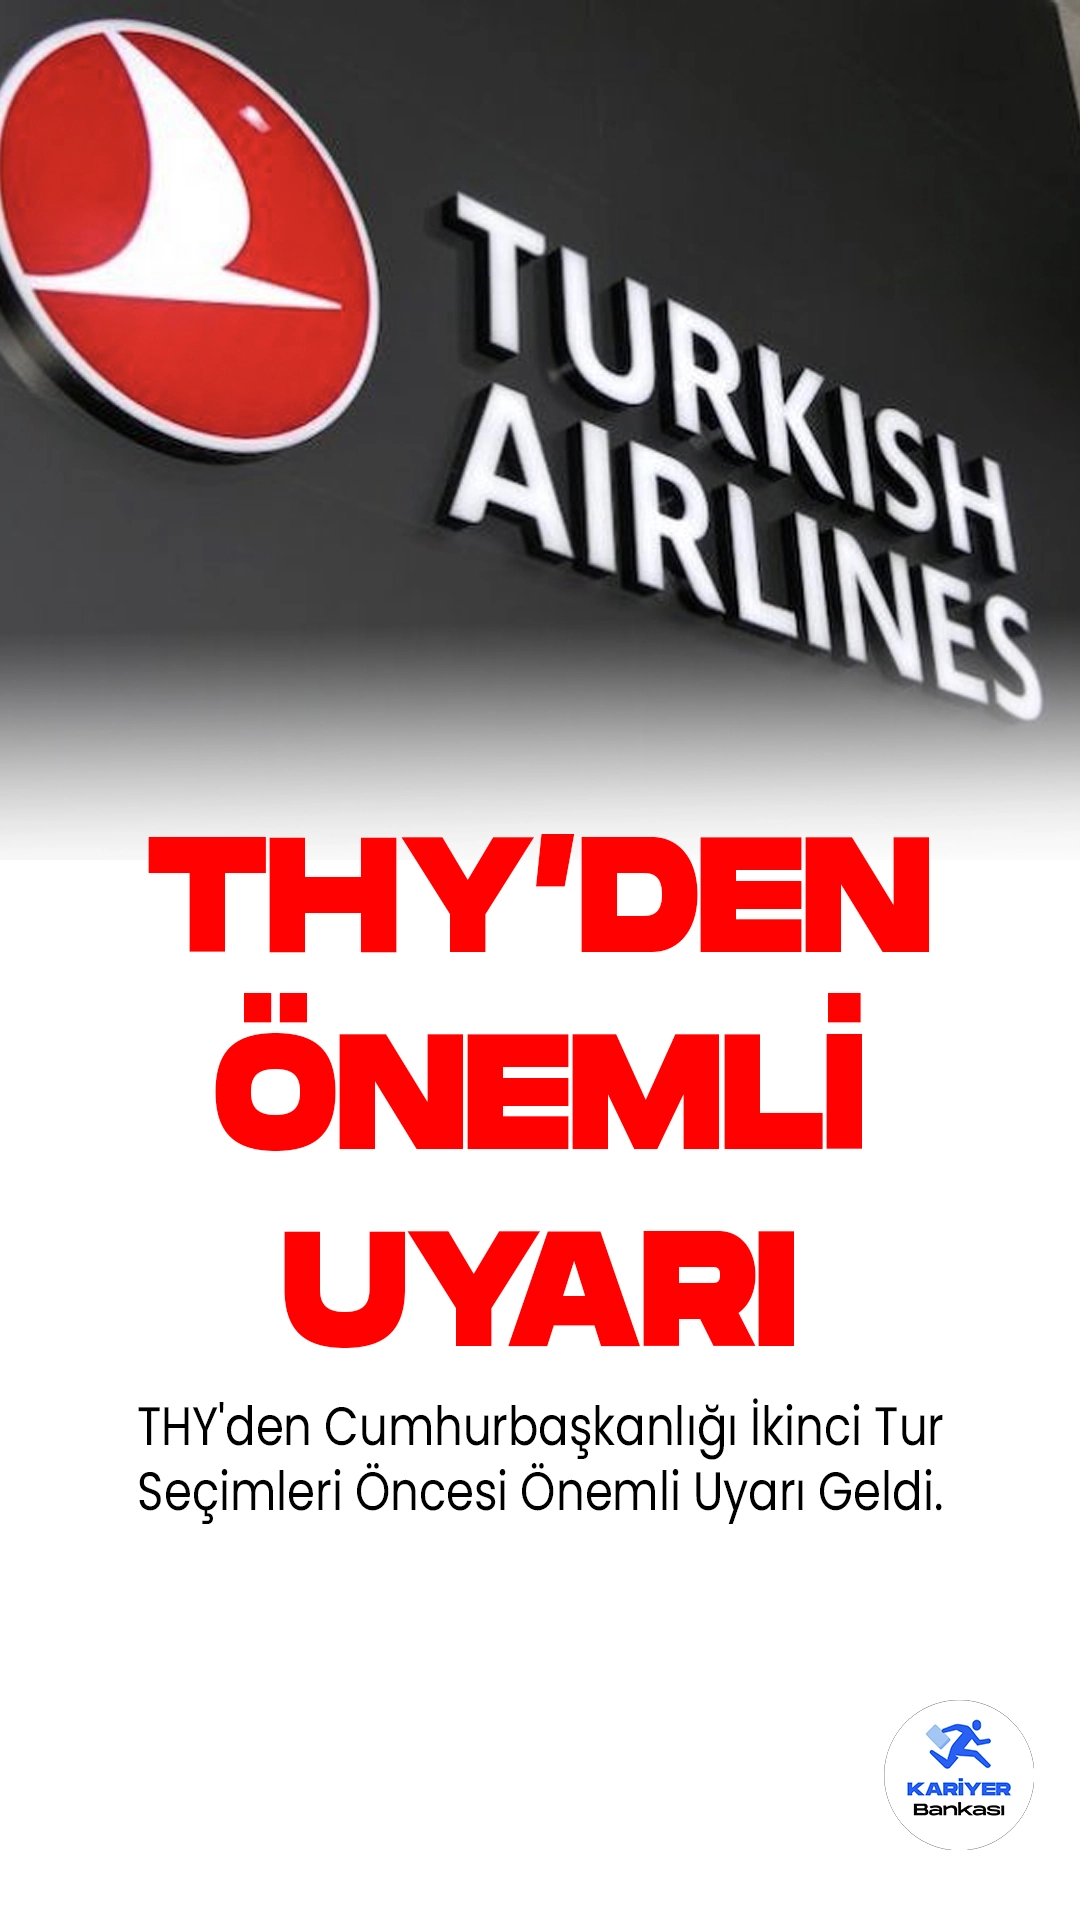 Türk Hava Yolları (THY), Cumhurbaşkanlığı ikinci tur seçimleri dolayısıyla yolcularına bazı esneklikler sunacağını duyurdu. Bu esneklikler, rezervasyon tarihinde değişiklik yapma, iptal etme ve iade alma hakkı şeklinde olacak.